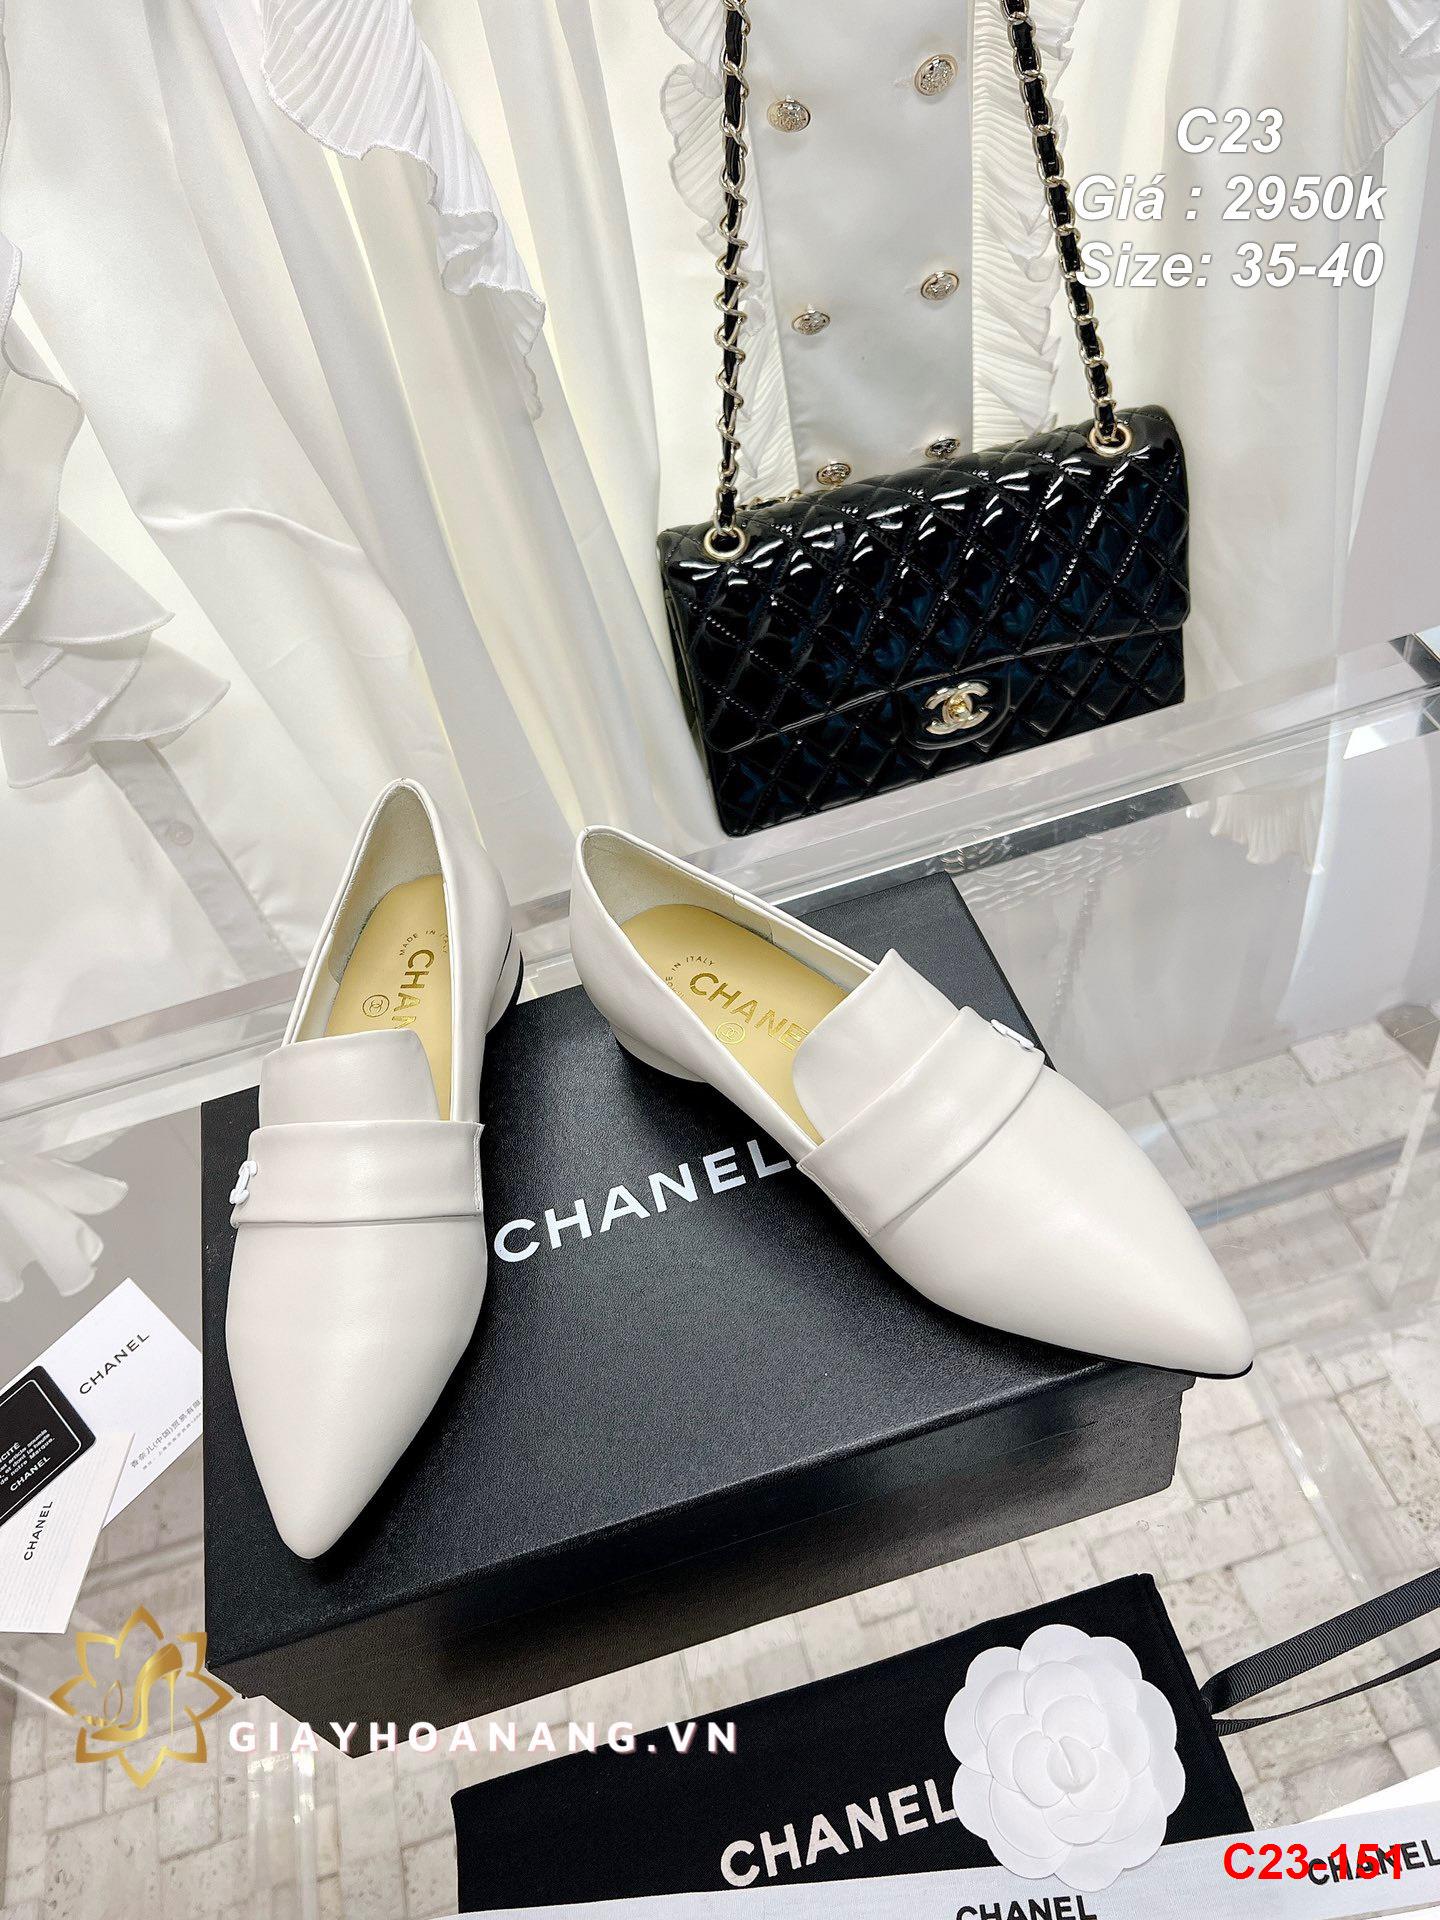 C23-151 Chanel giày lười siêu cấp